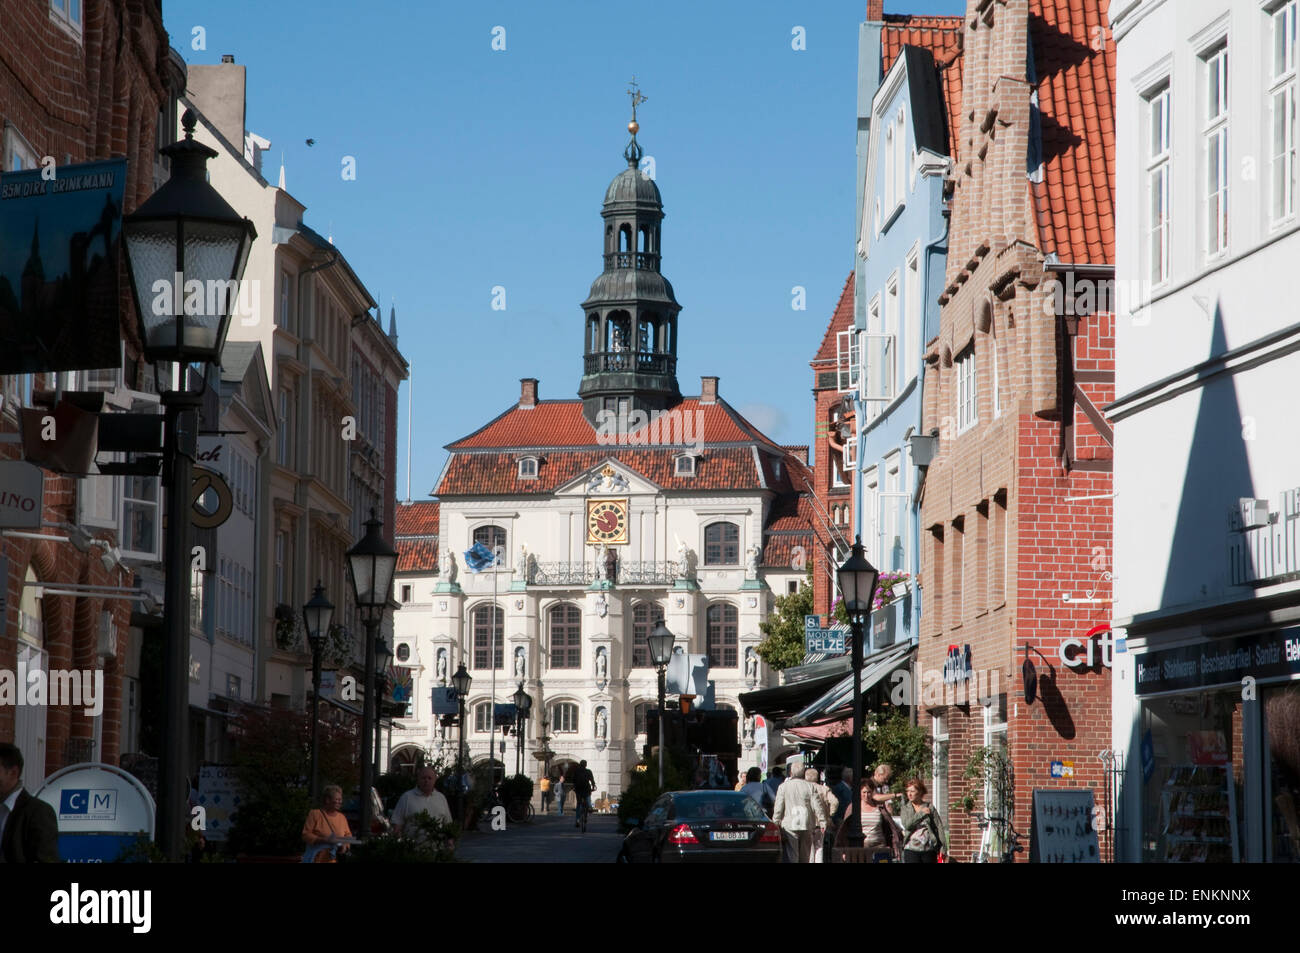 Rathaus, Altstadt, Lueneburg, Niedersachsen, Deutschland |  Guild hall, old town, Lueneburg, Lower Saxony, Germany Stock Photo